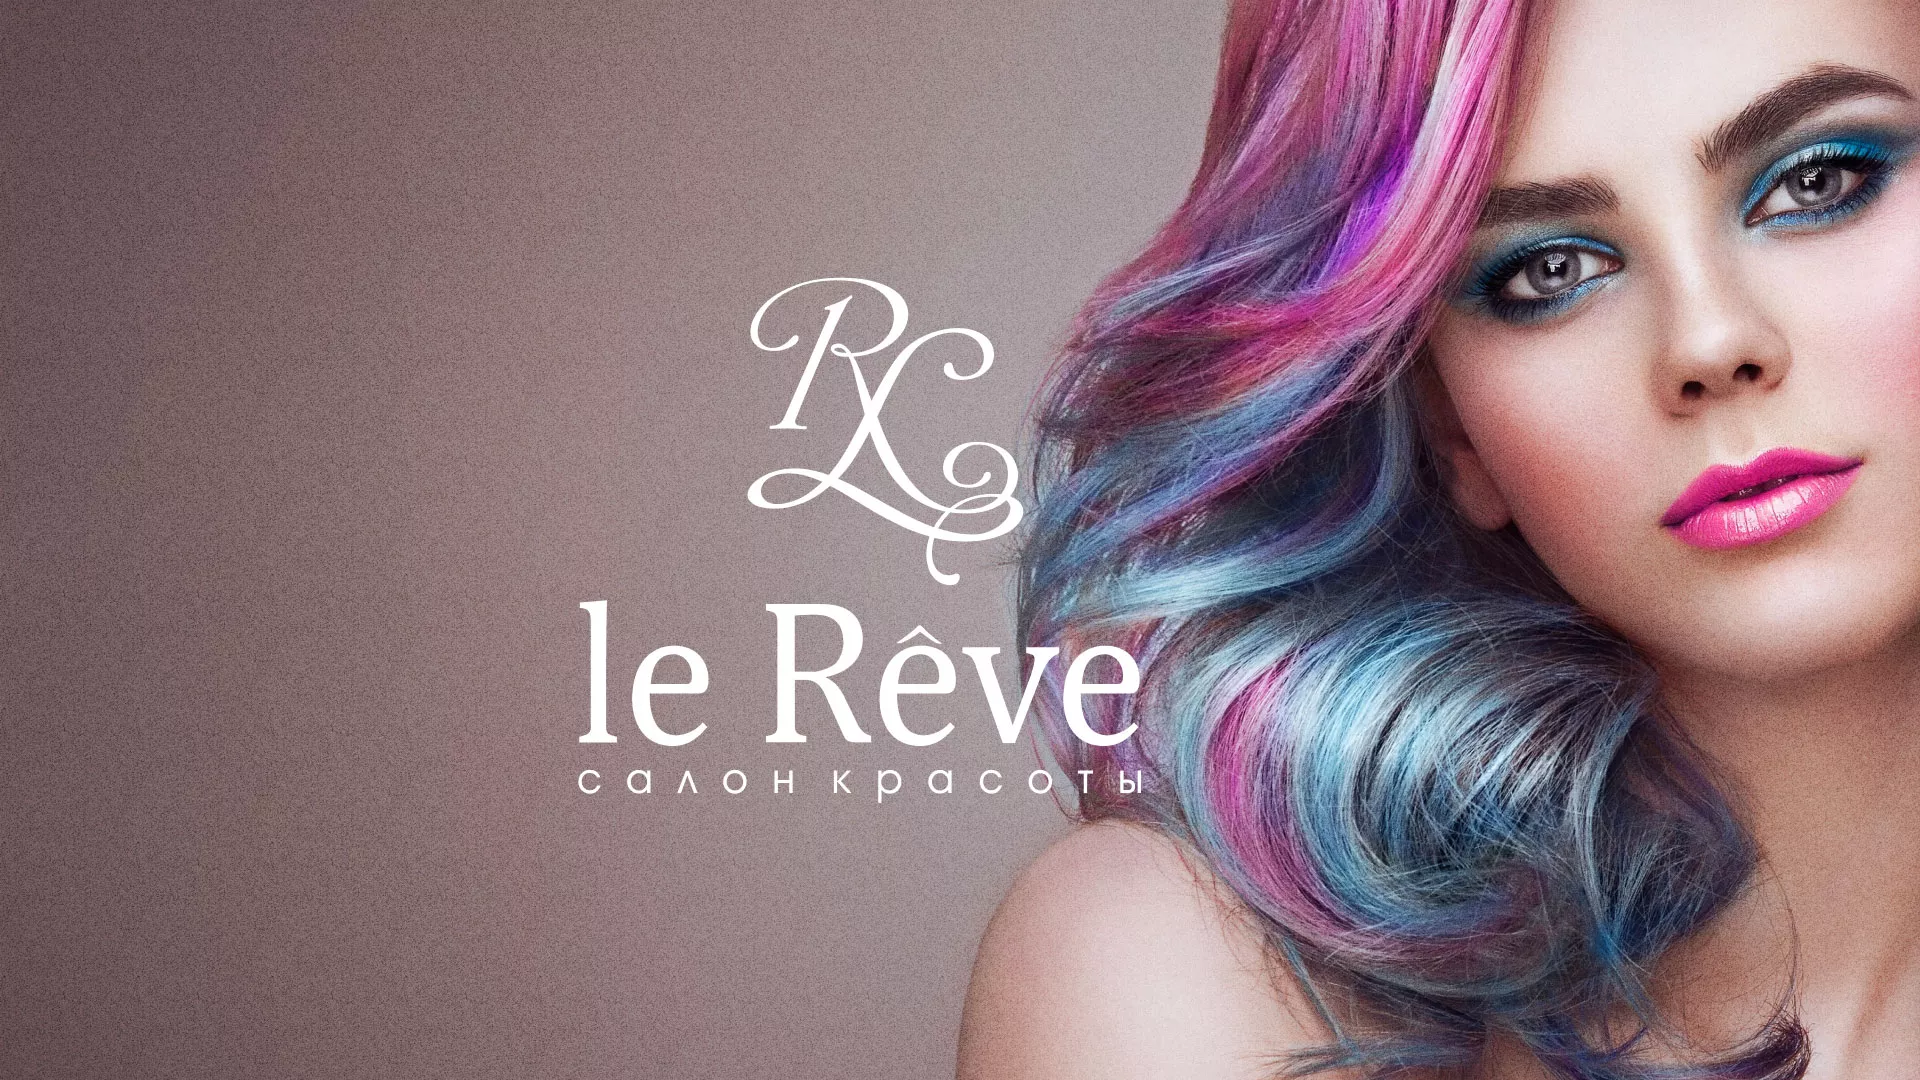 Создание сайта для салона красоты «Le Reve» в Строителе